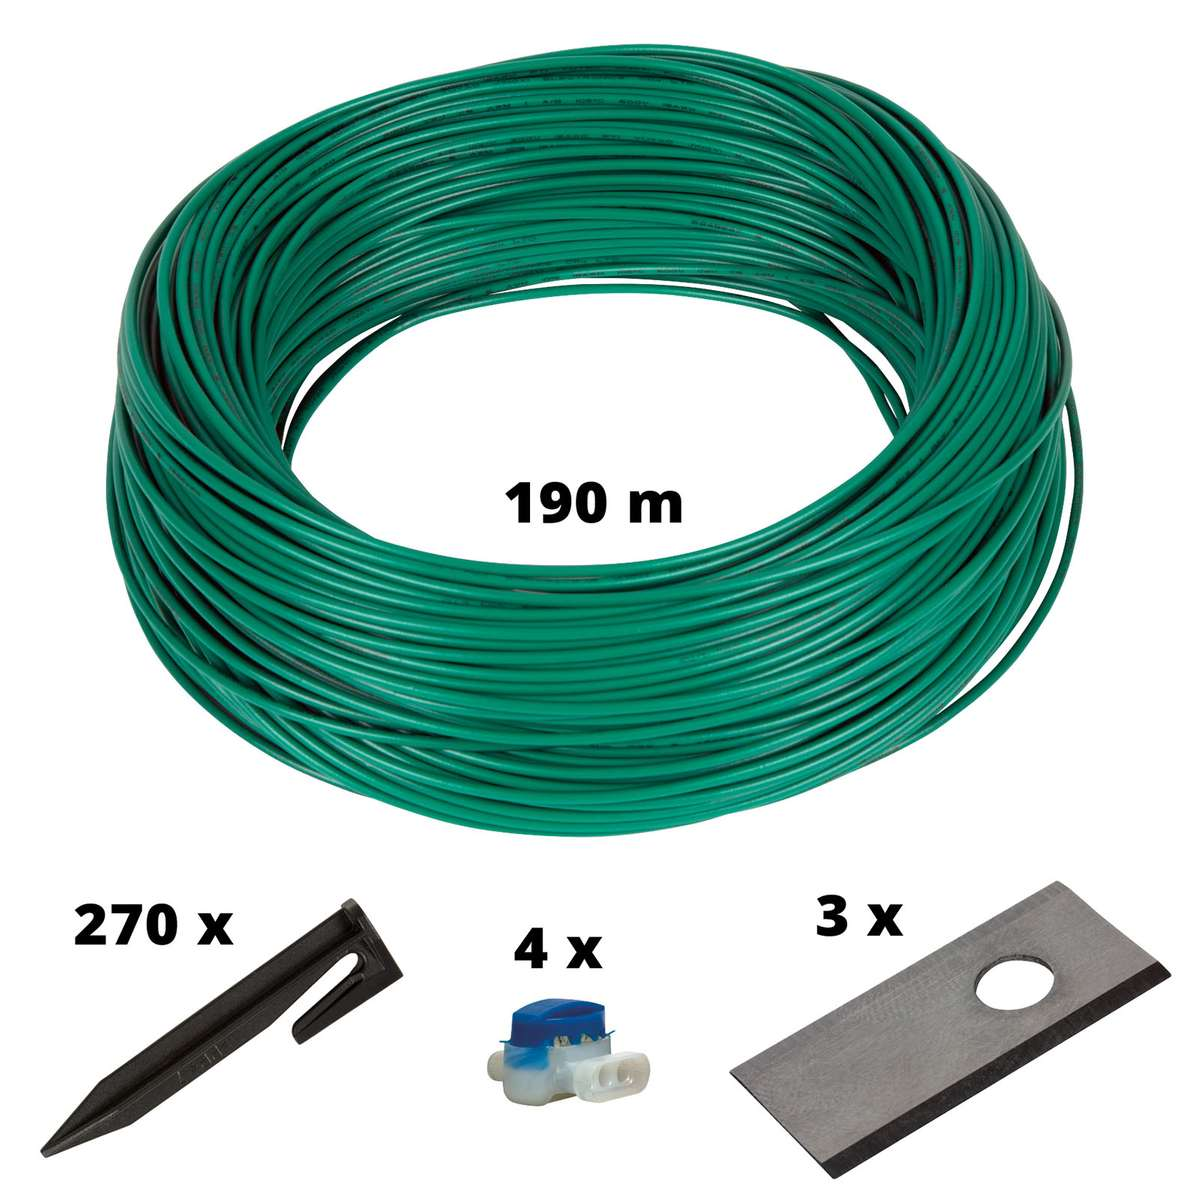 EINHELL Cable Kit 900m2 Mähroboter-Zubehör, Mehrfarbig